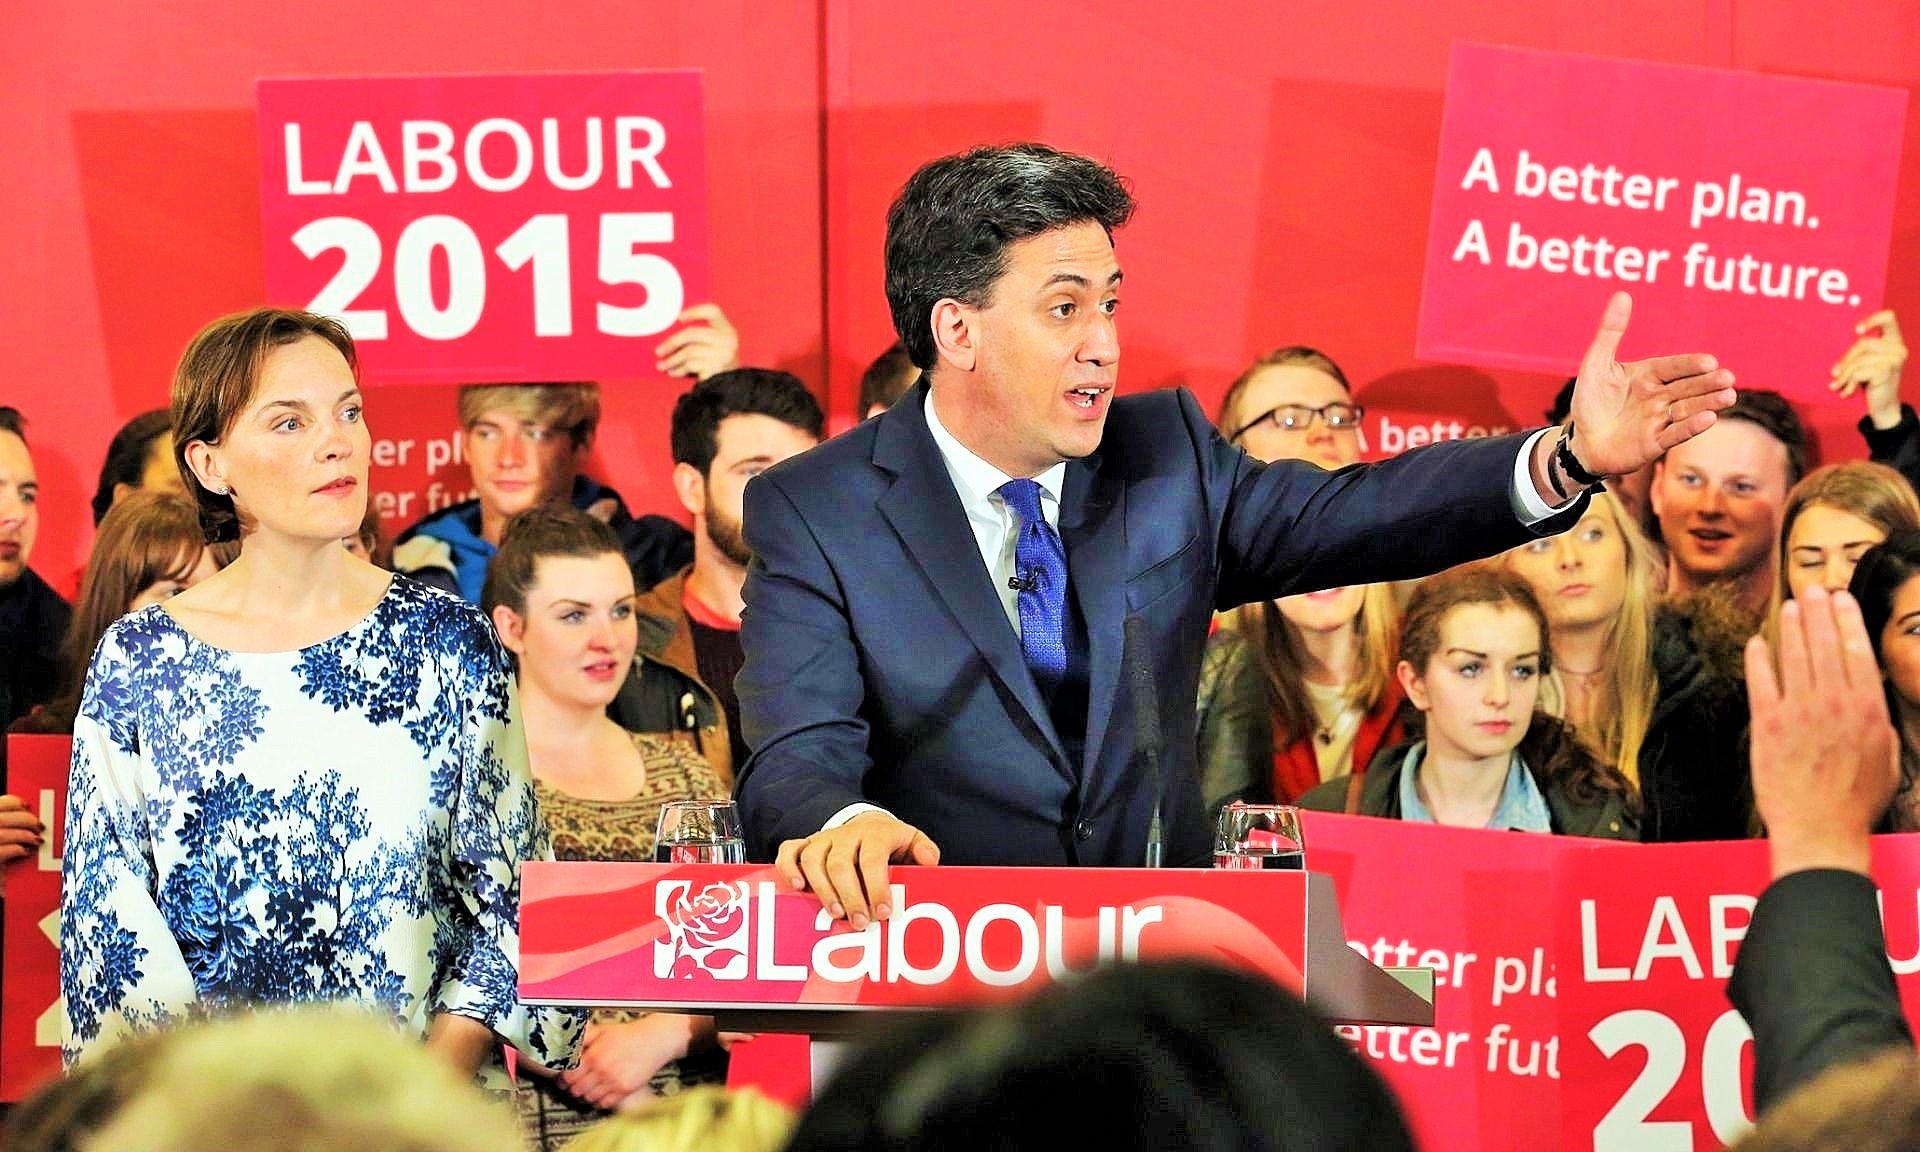 Tritt er am Freitag zurück? Ed Miliband, der Labourführer, am Vortag der Wahl mit seiner Frau Justine in Pudsey, Yorkshire. 